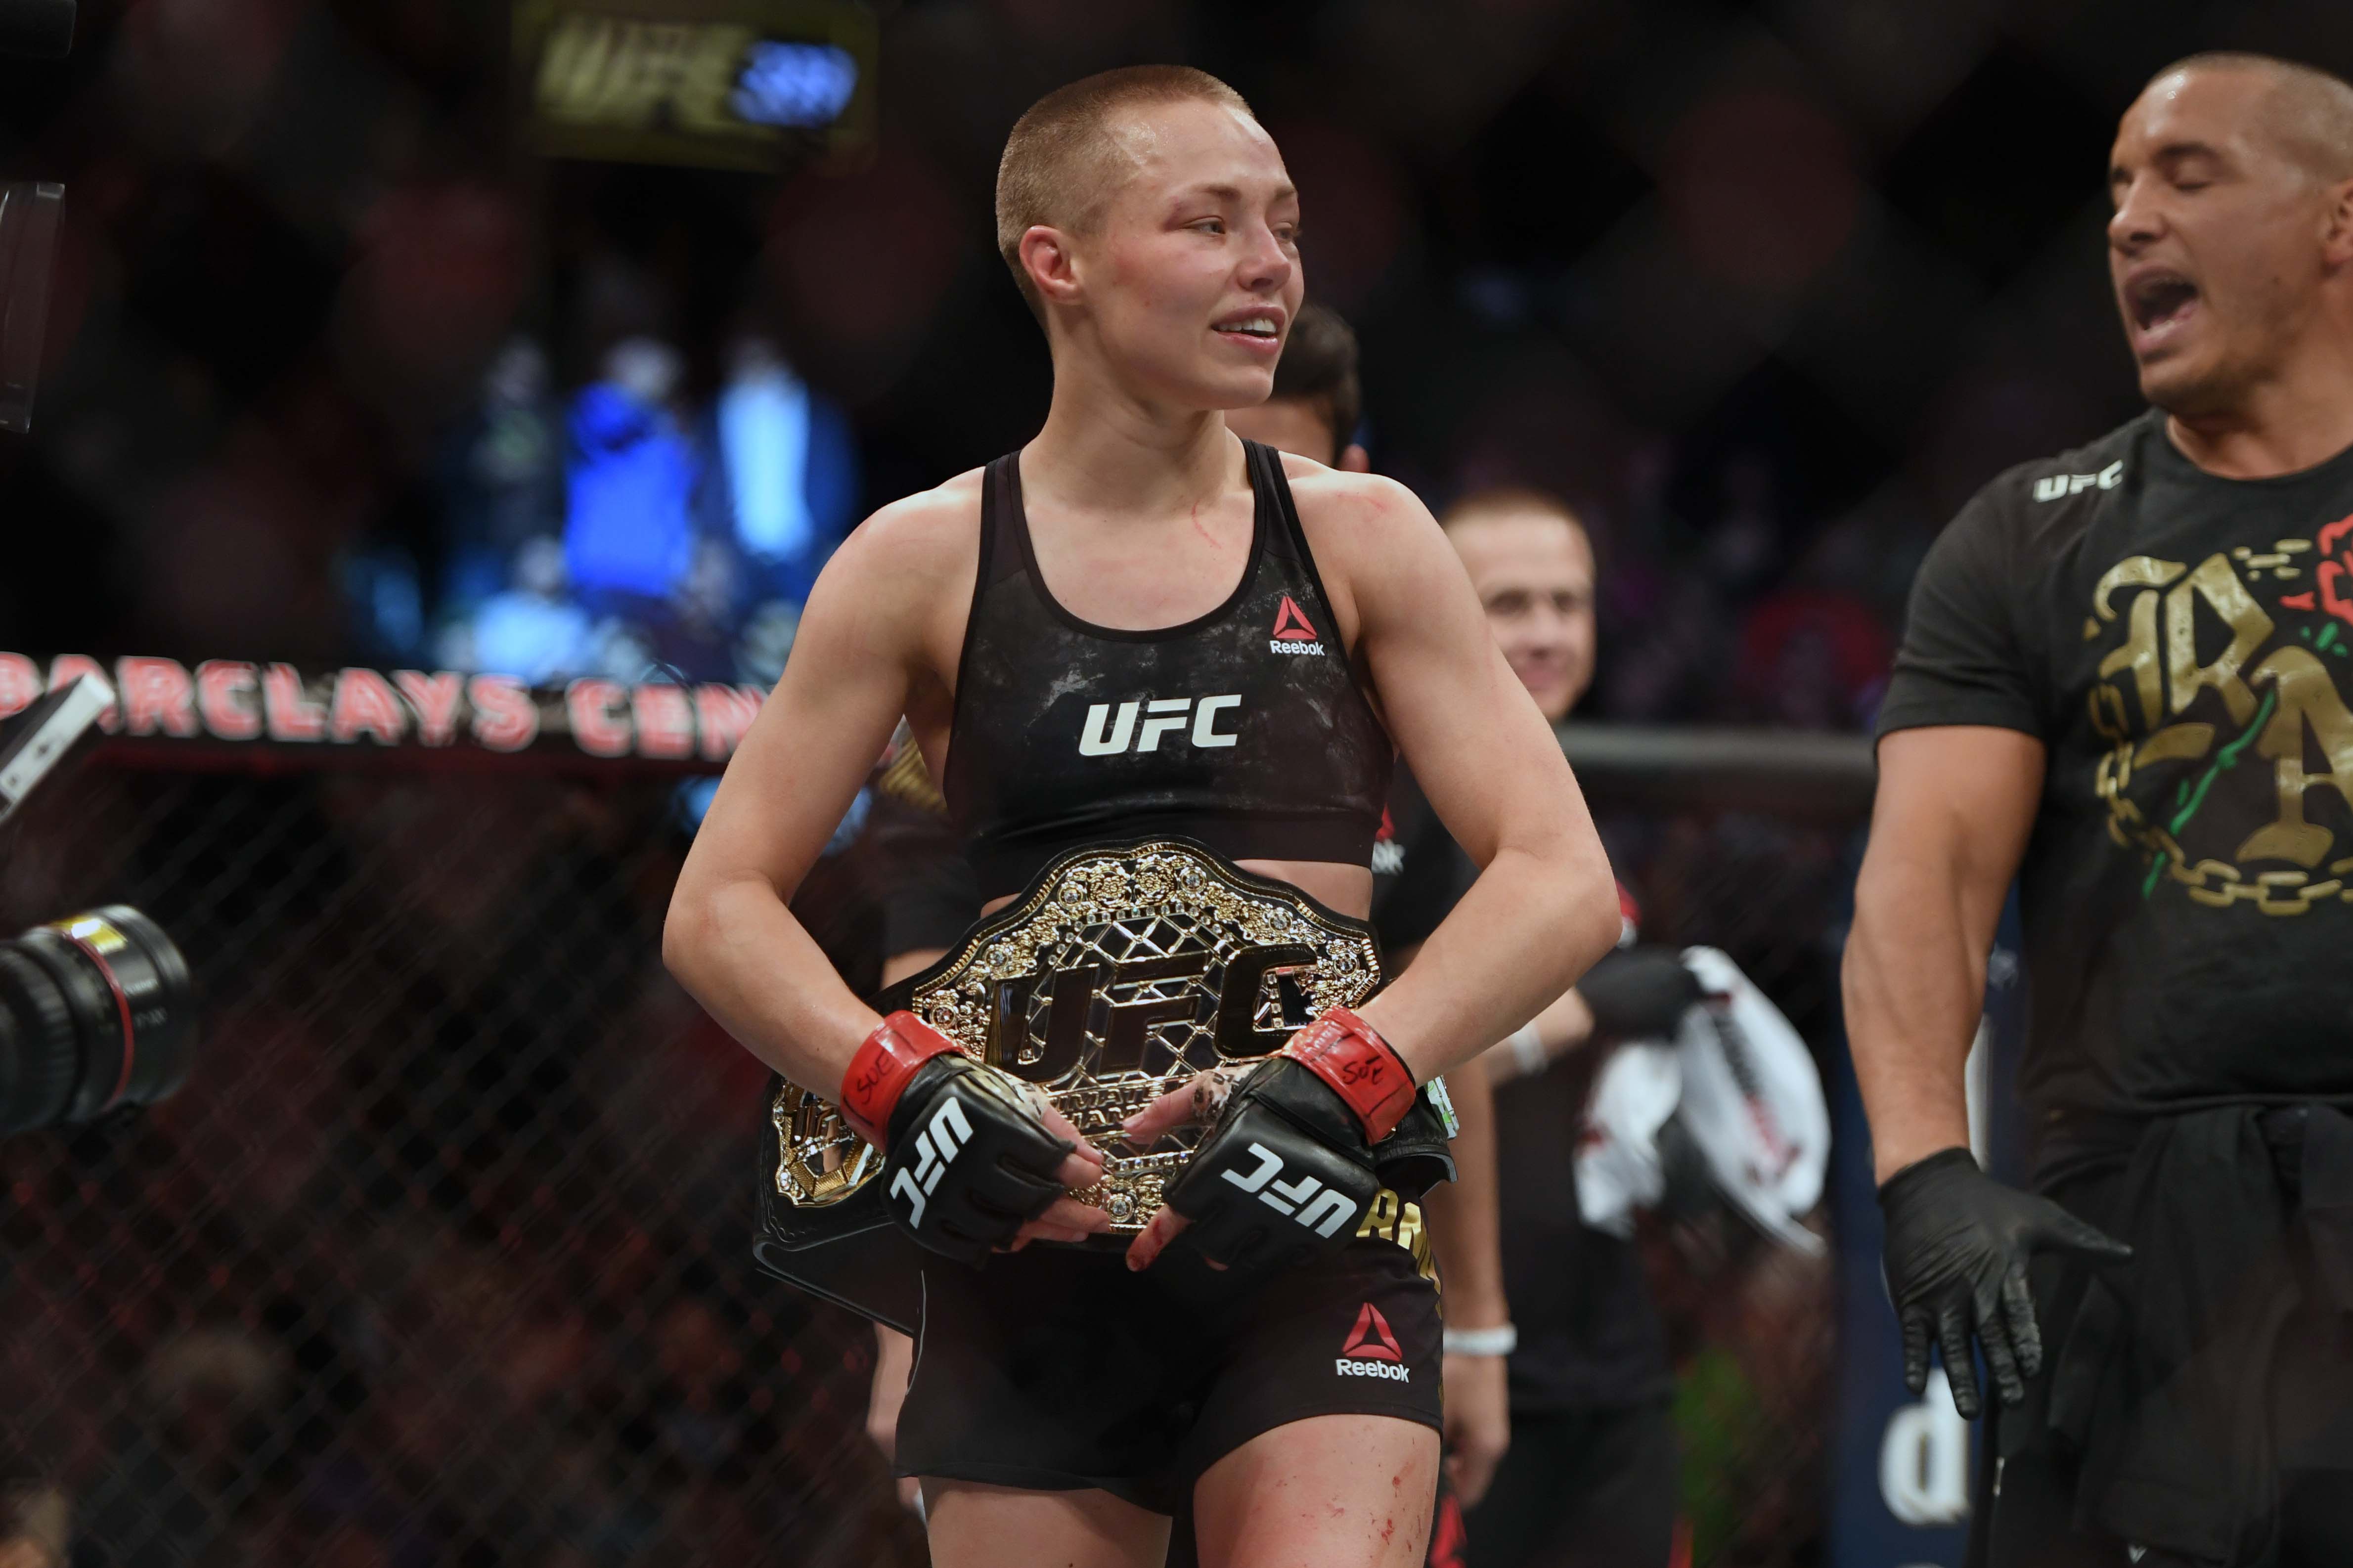 MMA: UFC 223 Rose Namajunas vs Joanna Jedrzezjczyk